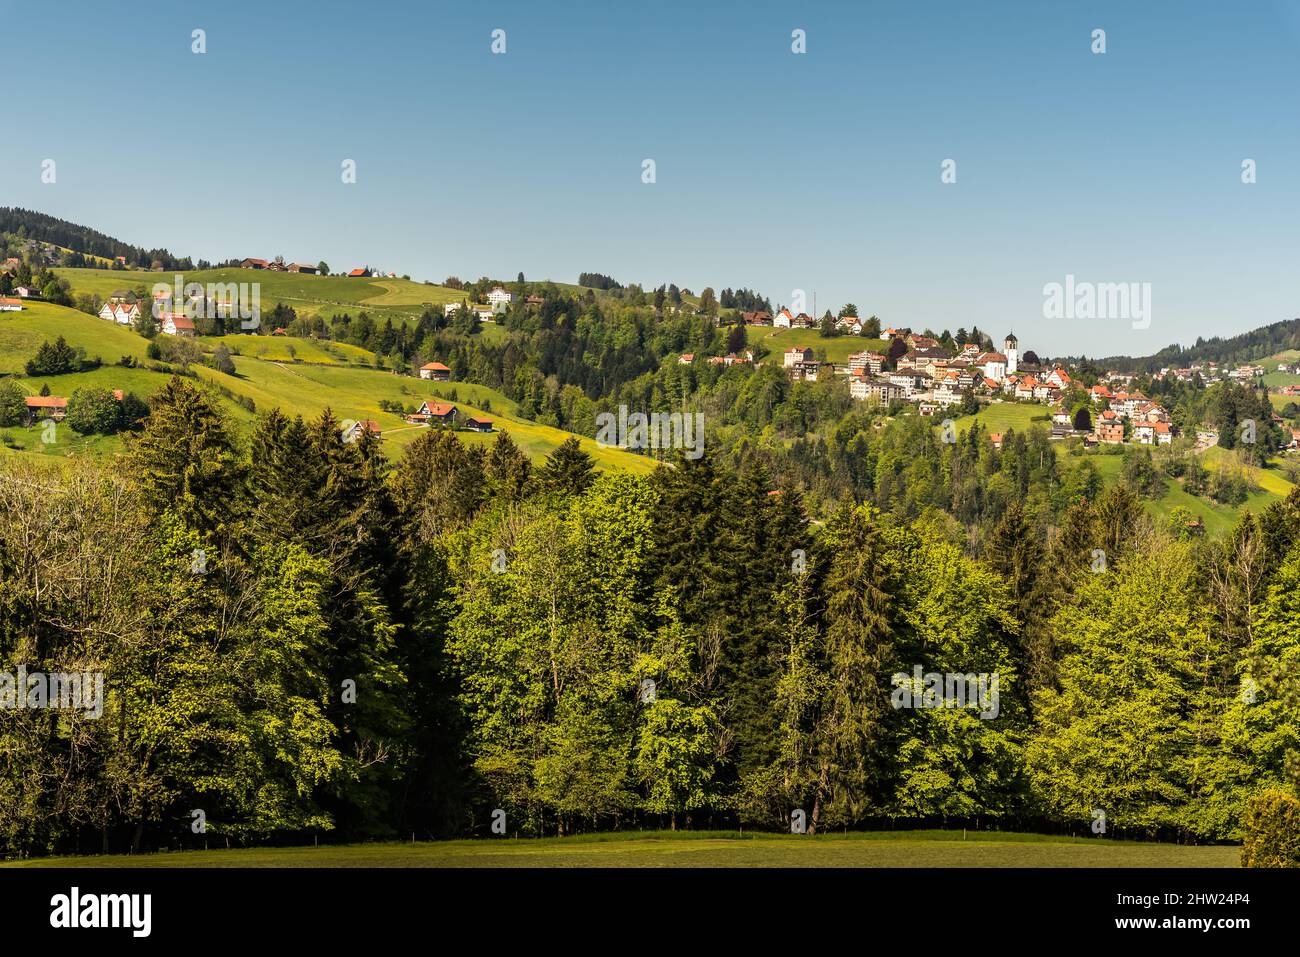 Village in Appenzellerland, Trogen, Canton Appenzell Ausserrhoden, Switzerland Stock Photo